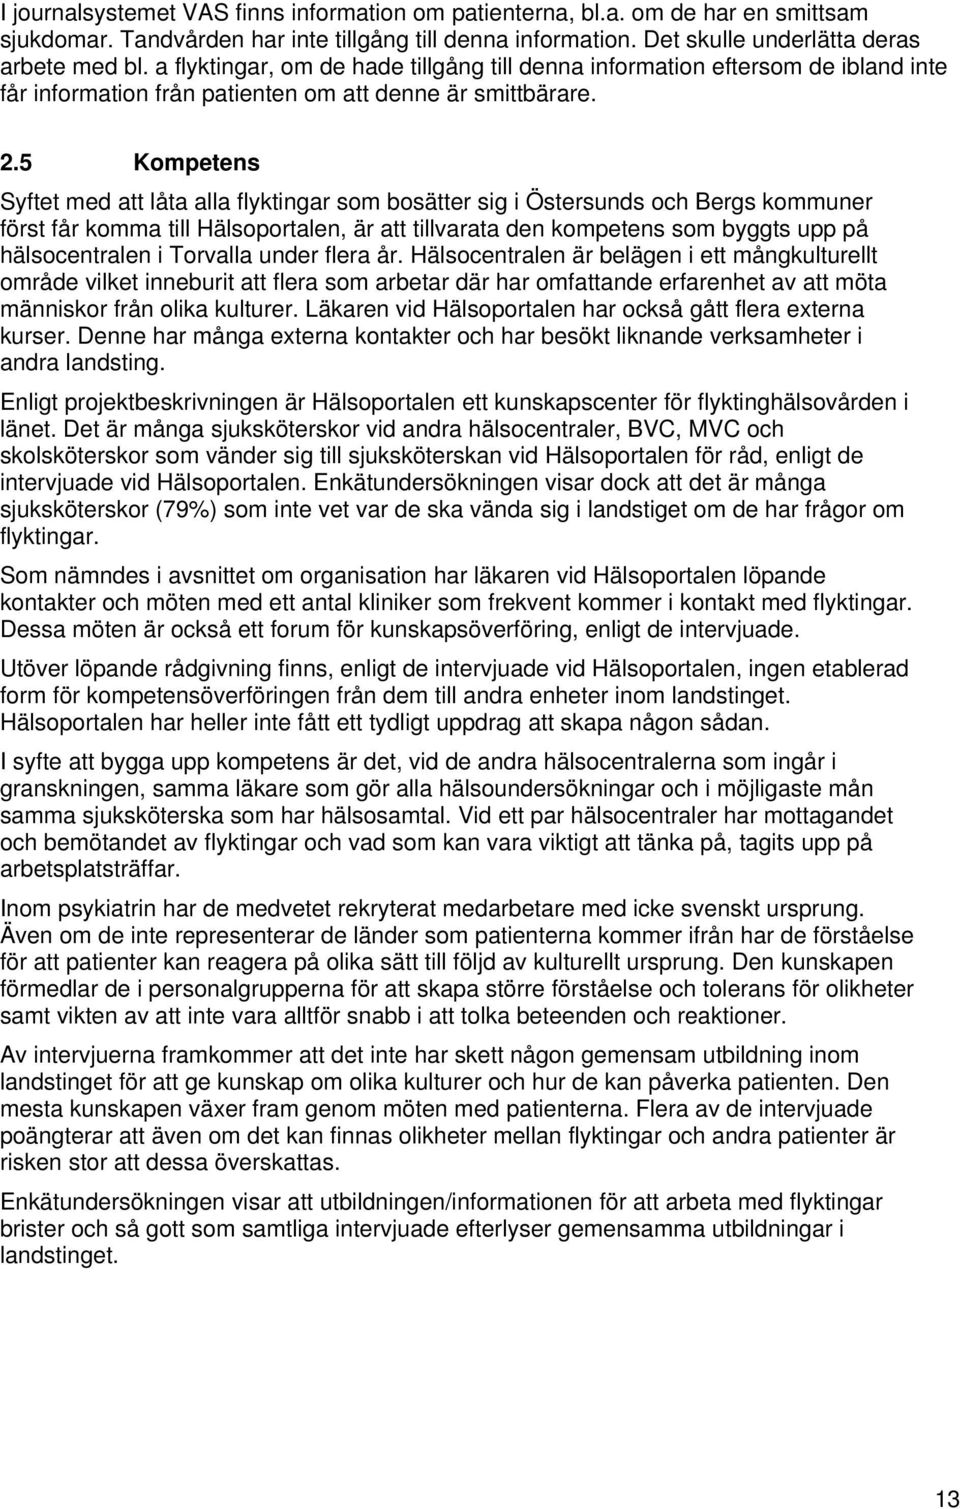 5 Kompetens Syftet med att låta alla flyktingar som bosätter sig i Östersunds och Bergs kommuner först får komma till Hälsoportalen, är att tillvarata den kompetens som byggts upp på hälsocentralen i